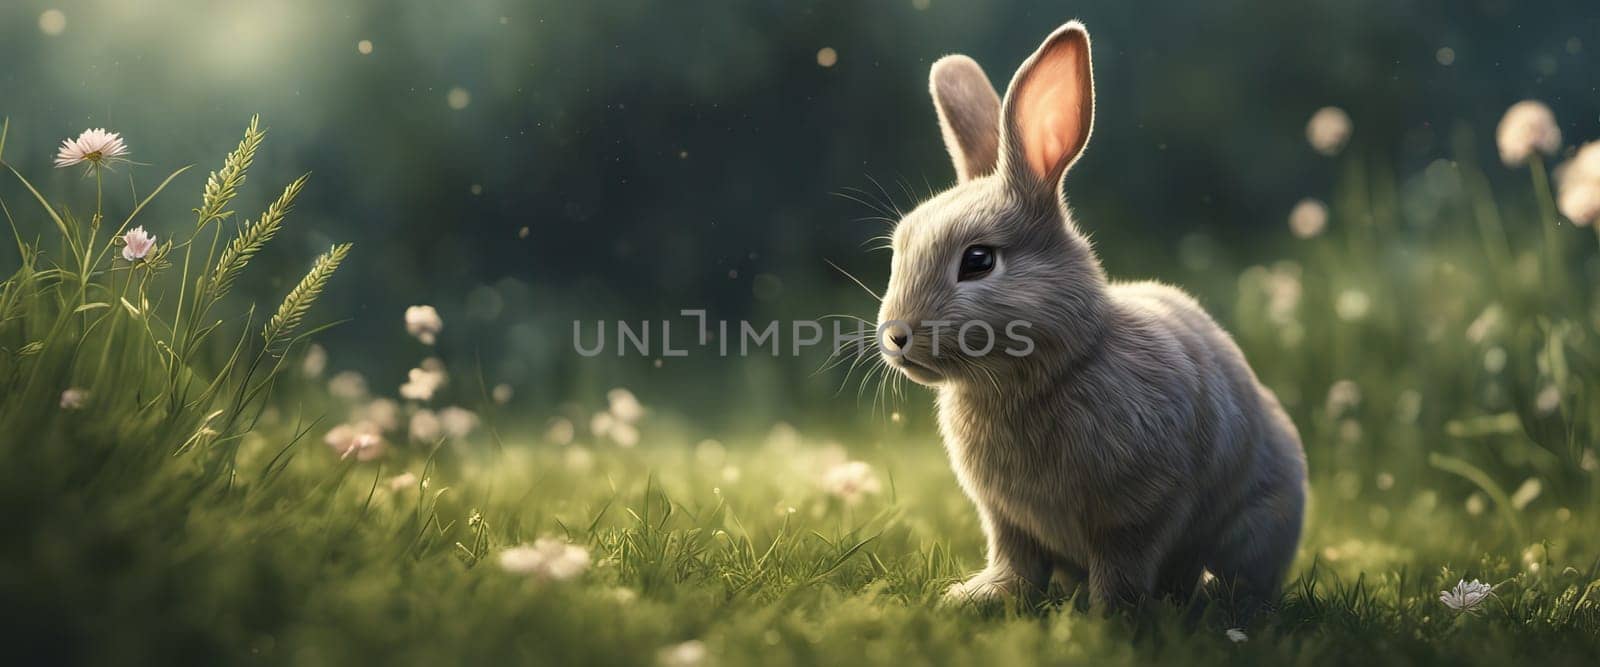 Rabbit. Cute little Easter bunny in meadow. Green grass under sunbeams. Rabbit by EkaterinaPereslavtseva